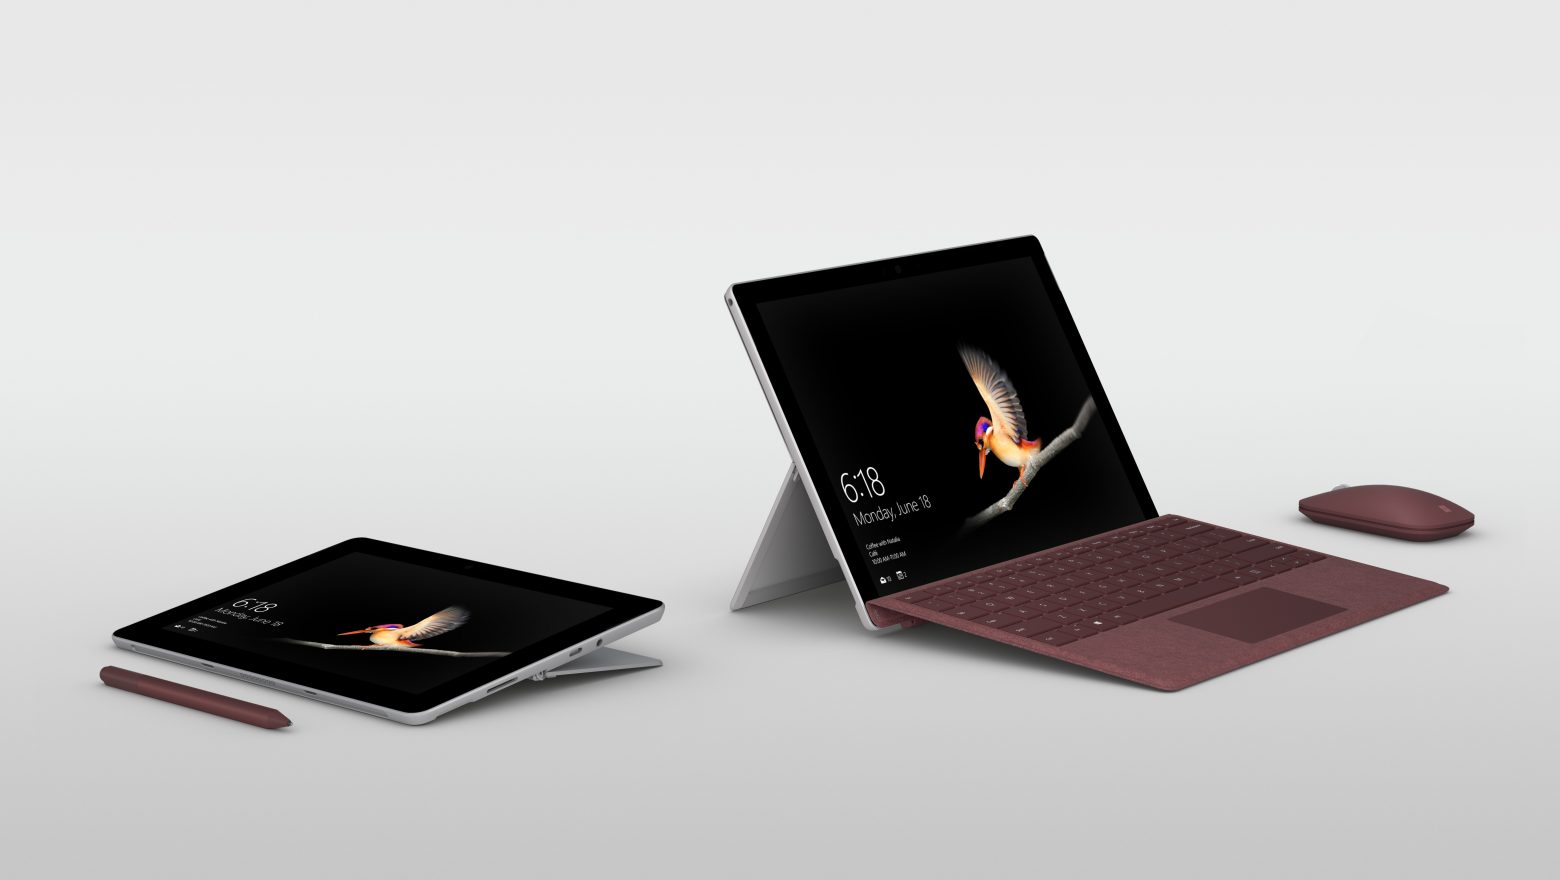  Microsoft Surface Go aurkeztu da!  Hona hemen Surface Go funtzioak!
